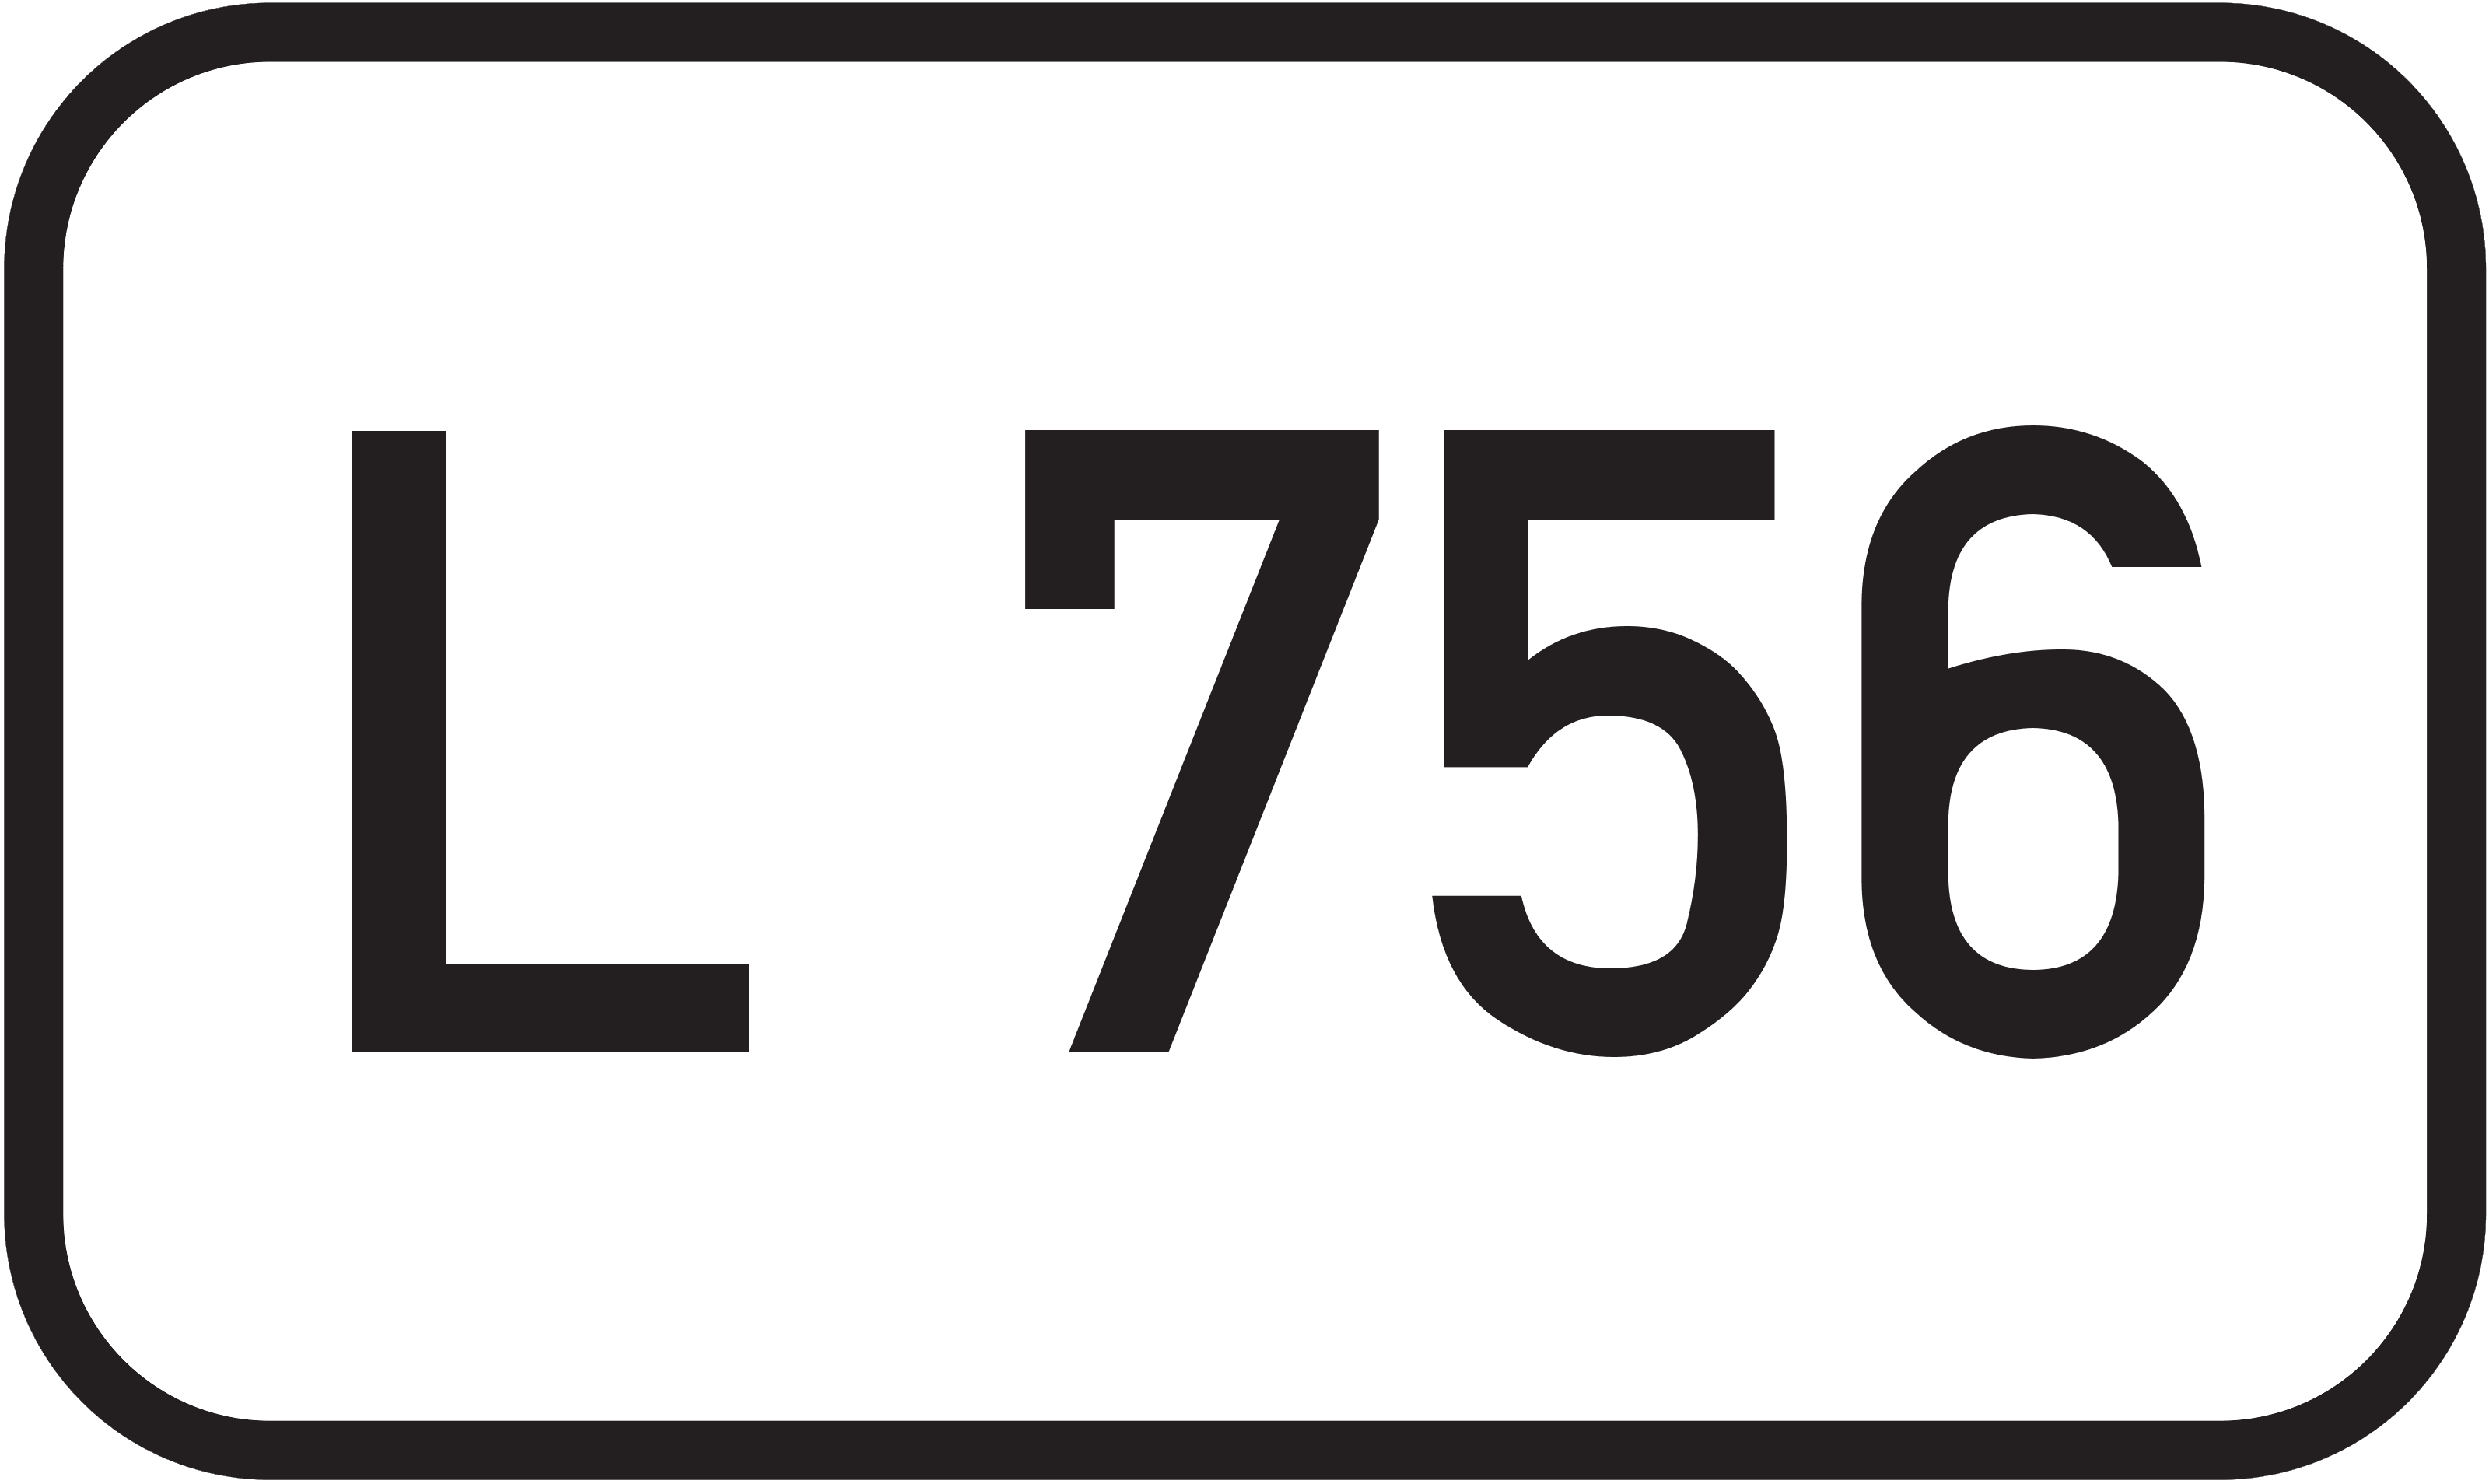 Landesstraße L 756